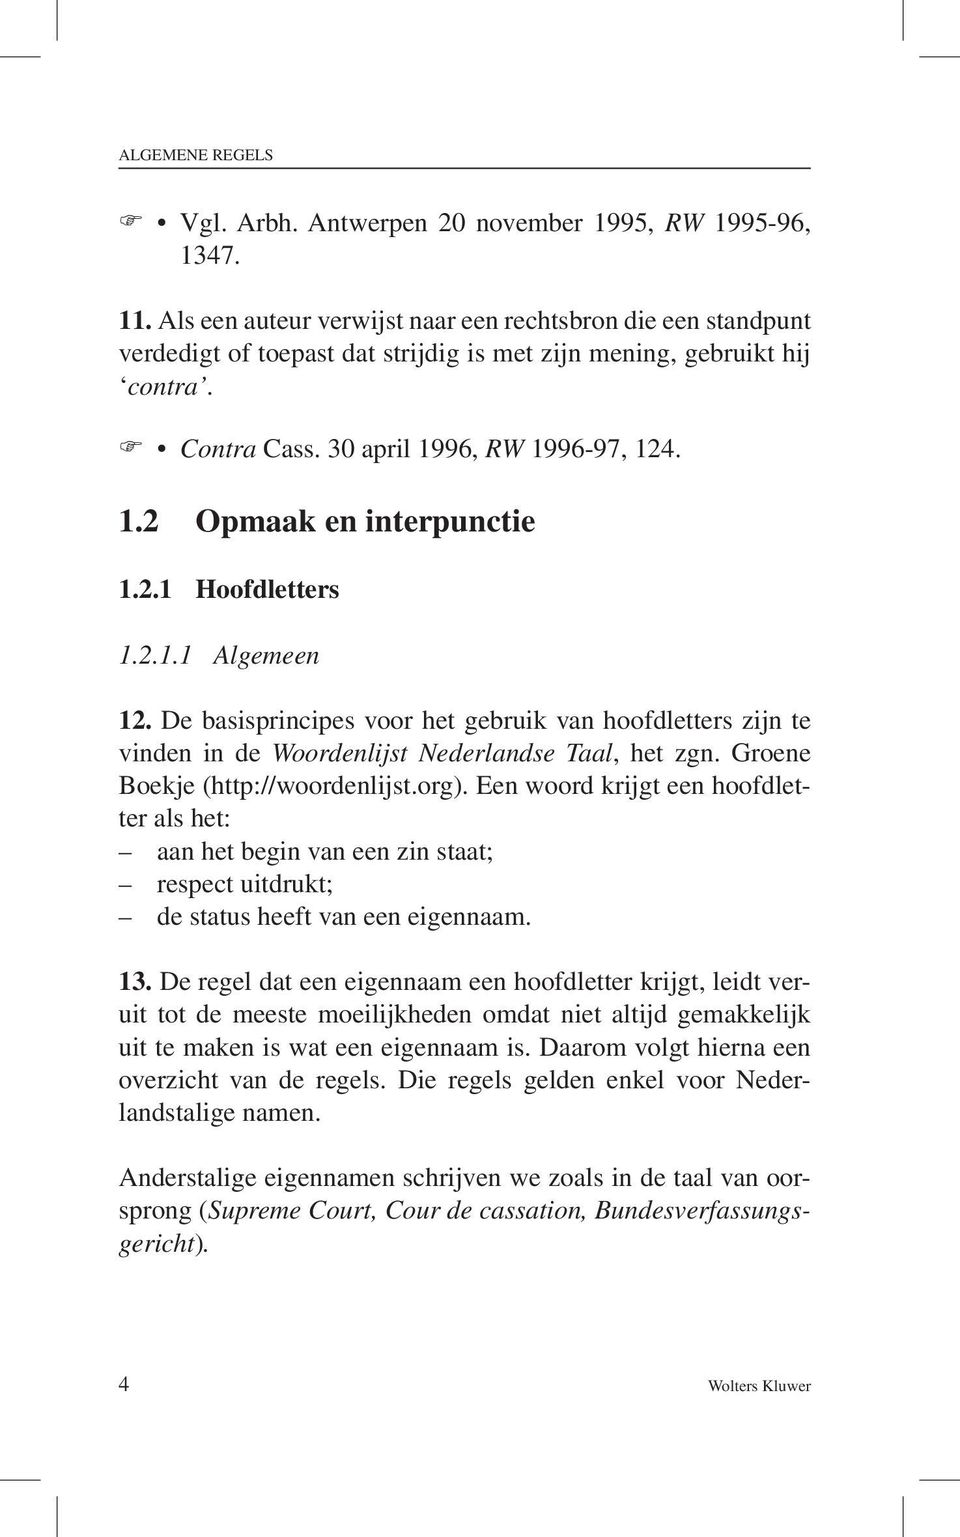 2.1 Hoofdletters 1.2.1.1 Algemeen 12. De basisprincipes voor het gebruik van hoofdletters zijn te vinden in de Woordenlijst Nederlandse Taal, het zgn. Groene Boekje (http://woordenlijst.org).